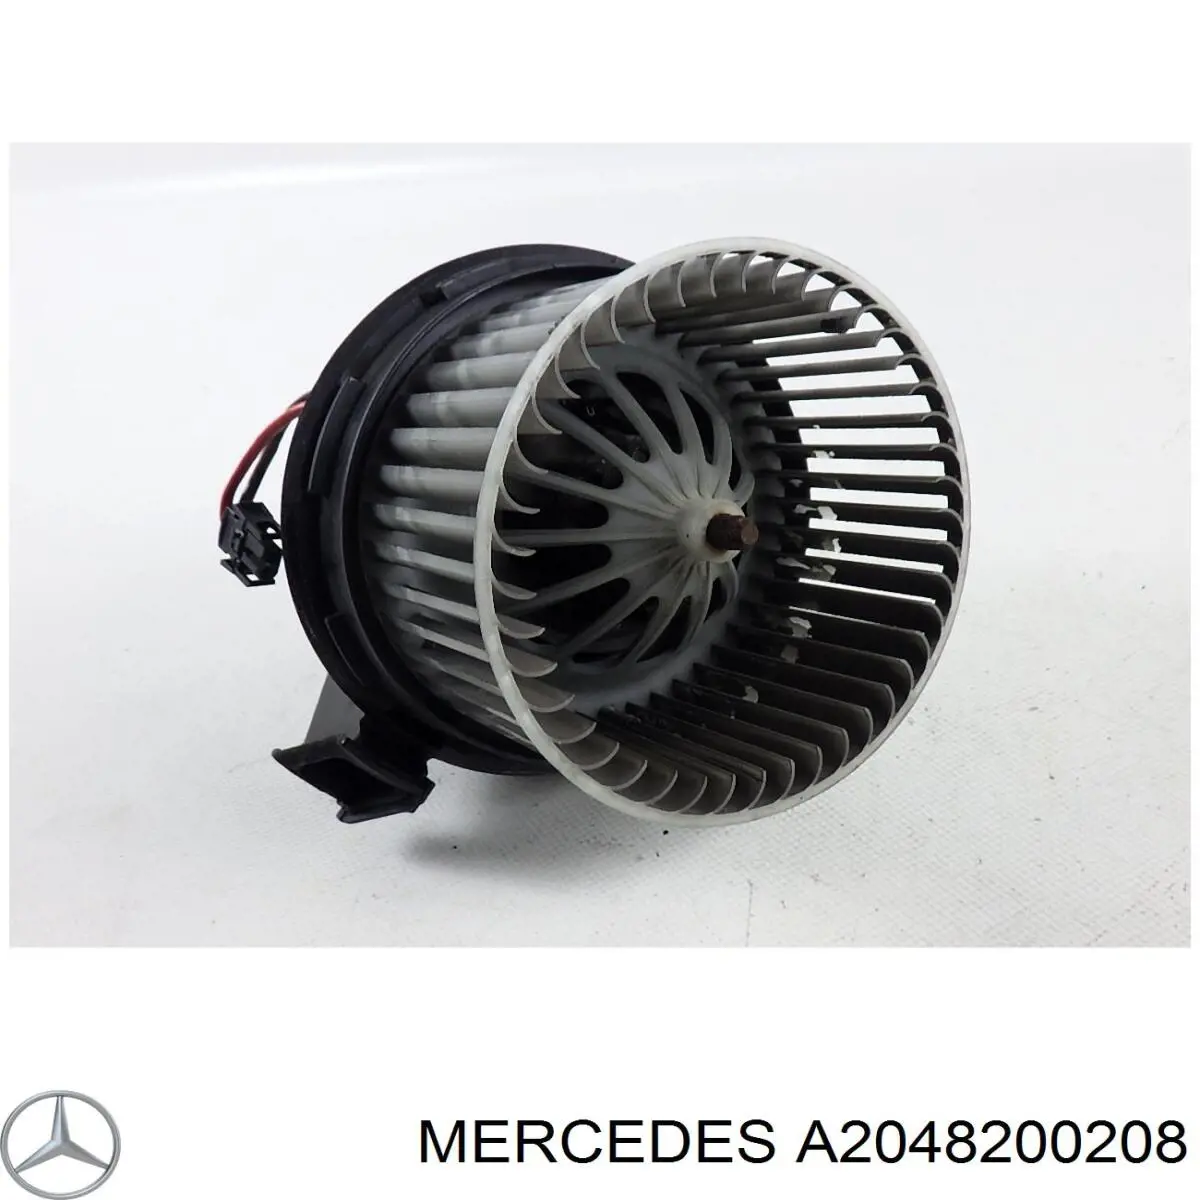 A2048200208 Mercedes motor eléctrico, ventilador habitáculo